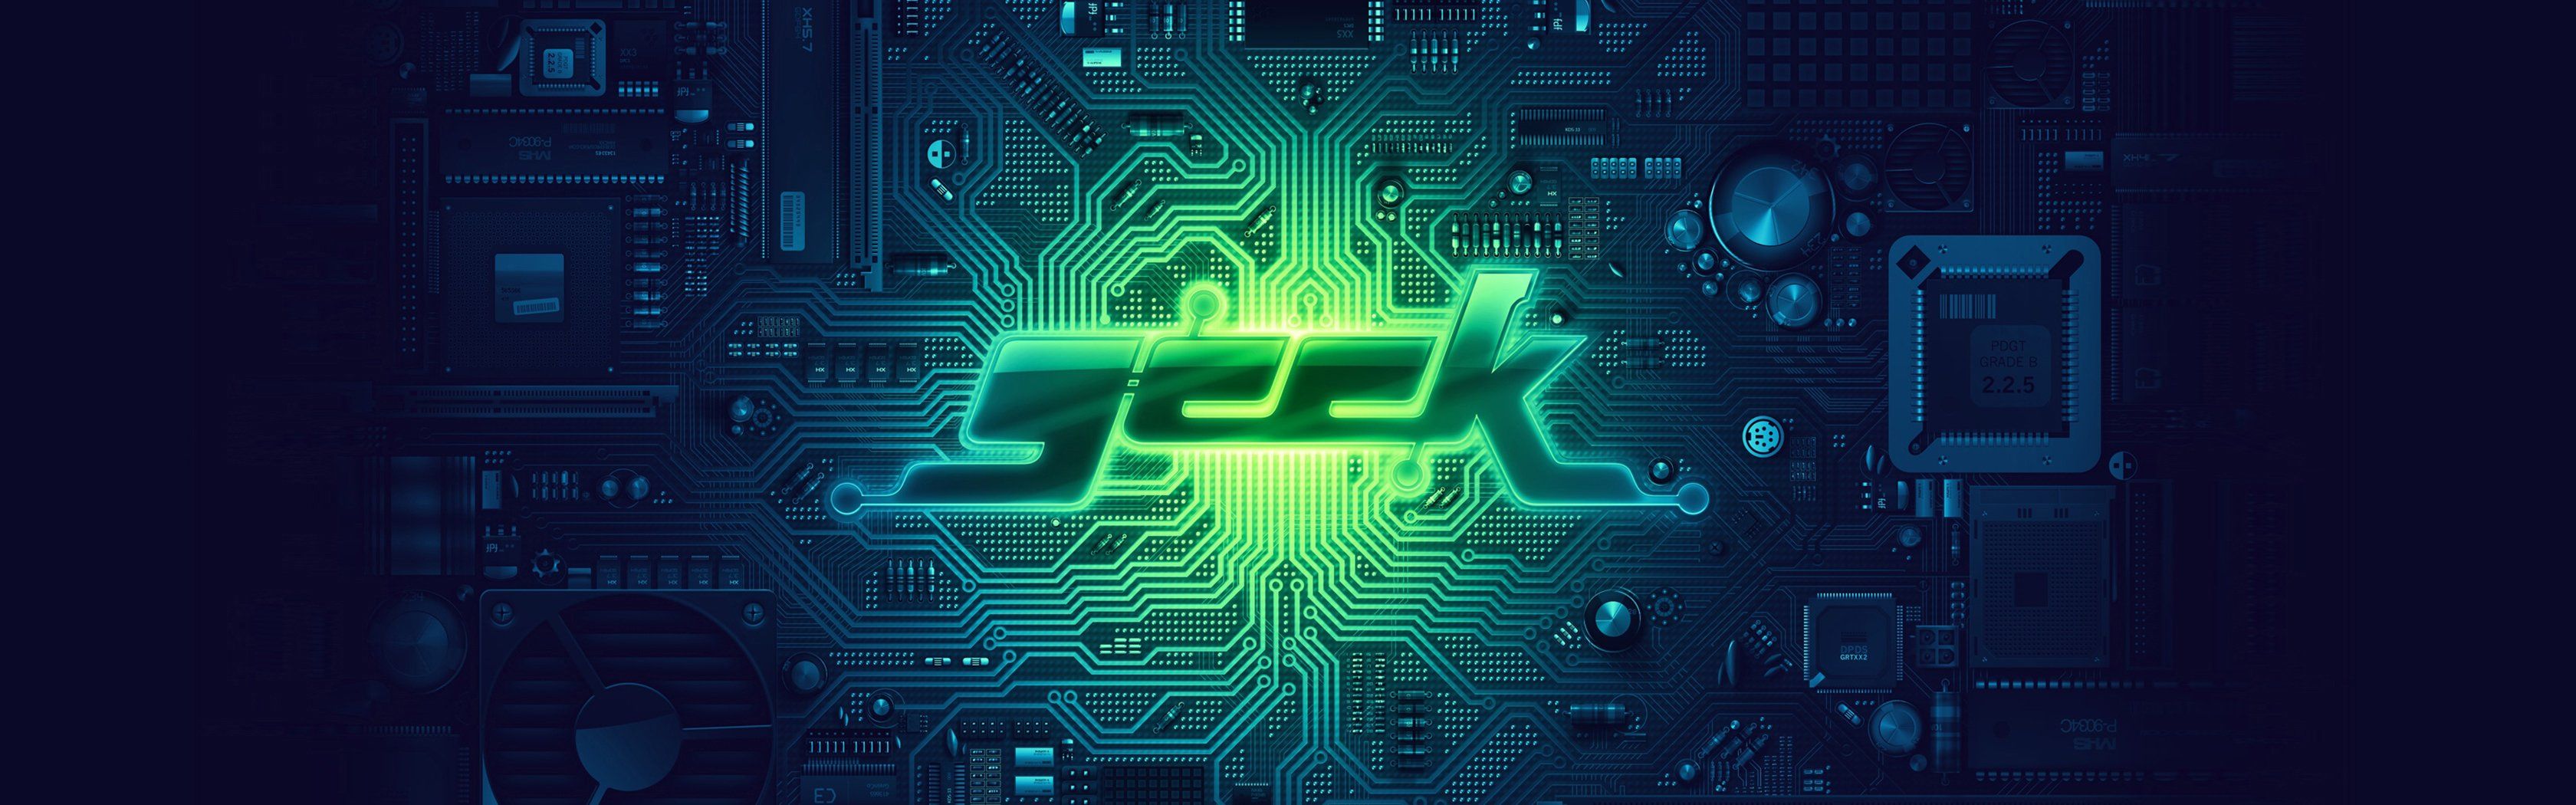 Green blue geek PCB motherboards circuits Derek Prospero wallpapers